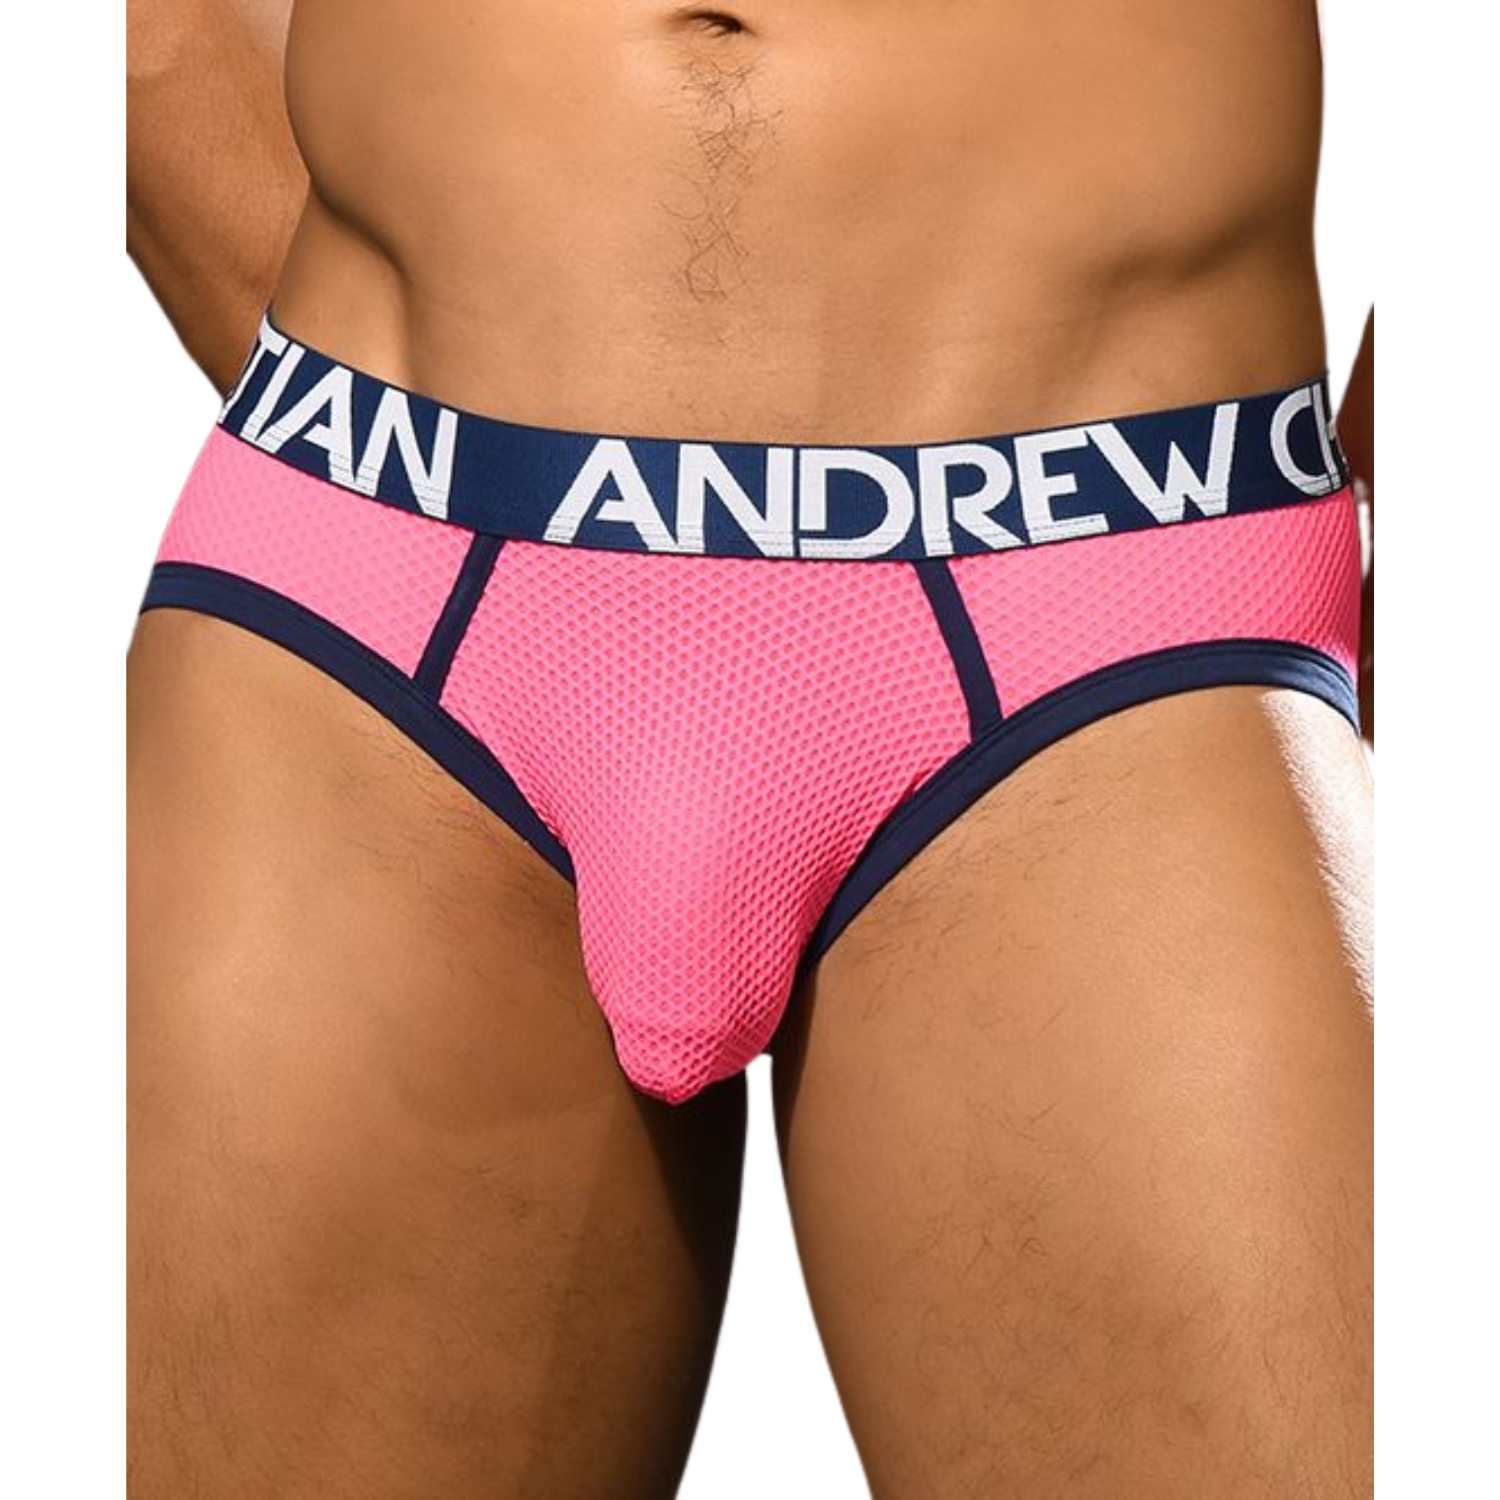 Stijlvolle en sexy roze mesh jockstrap van het bekende merk Andrew Christian. Te koop bij Flavourez.